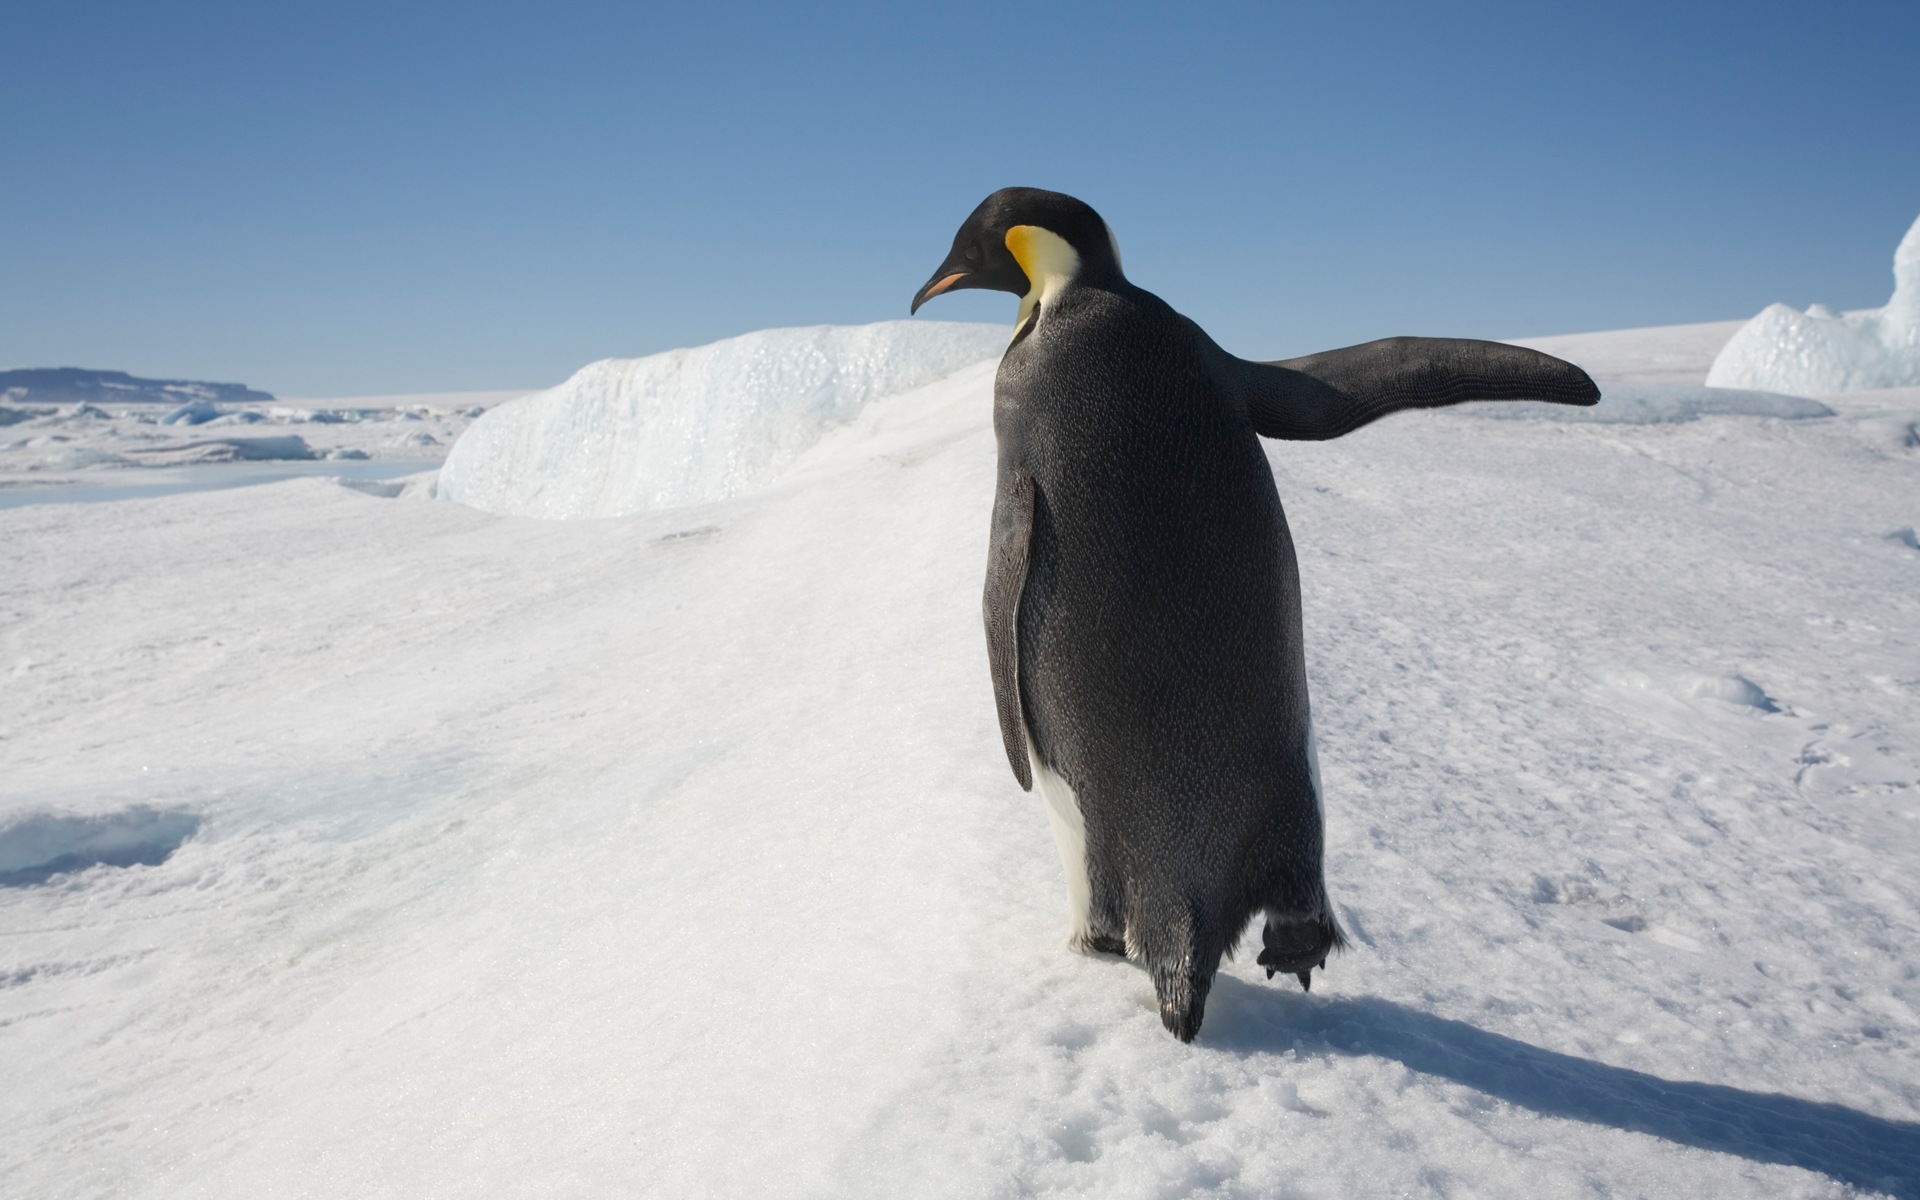 Windows 8: Fondos de pantalla, paisajes antárticos nieve, pingüinos antárticos #10 - 1920x1200